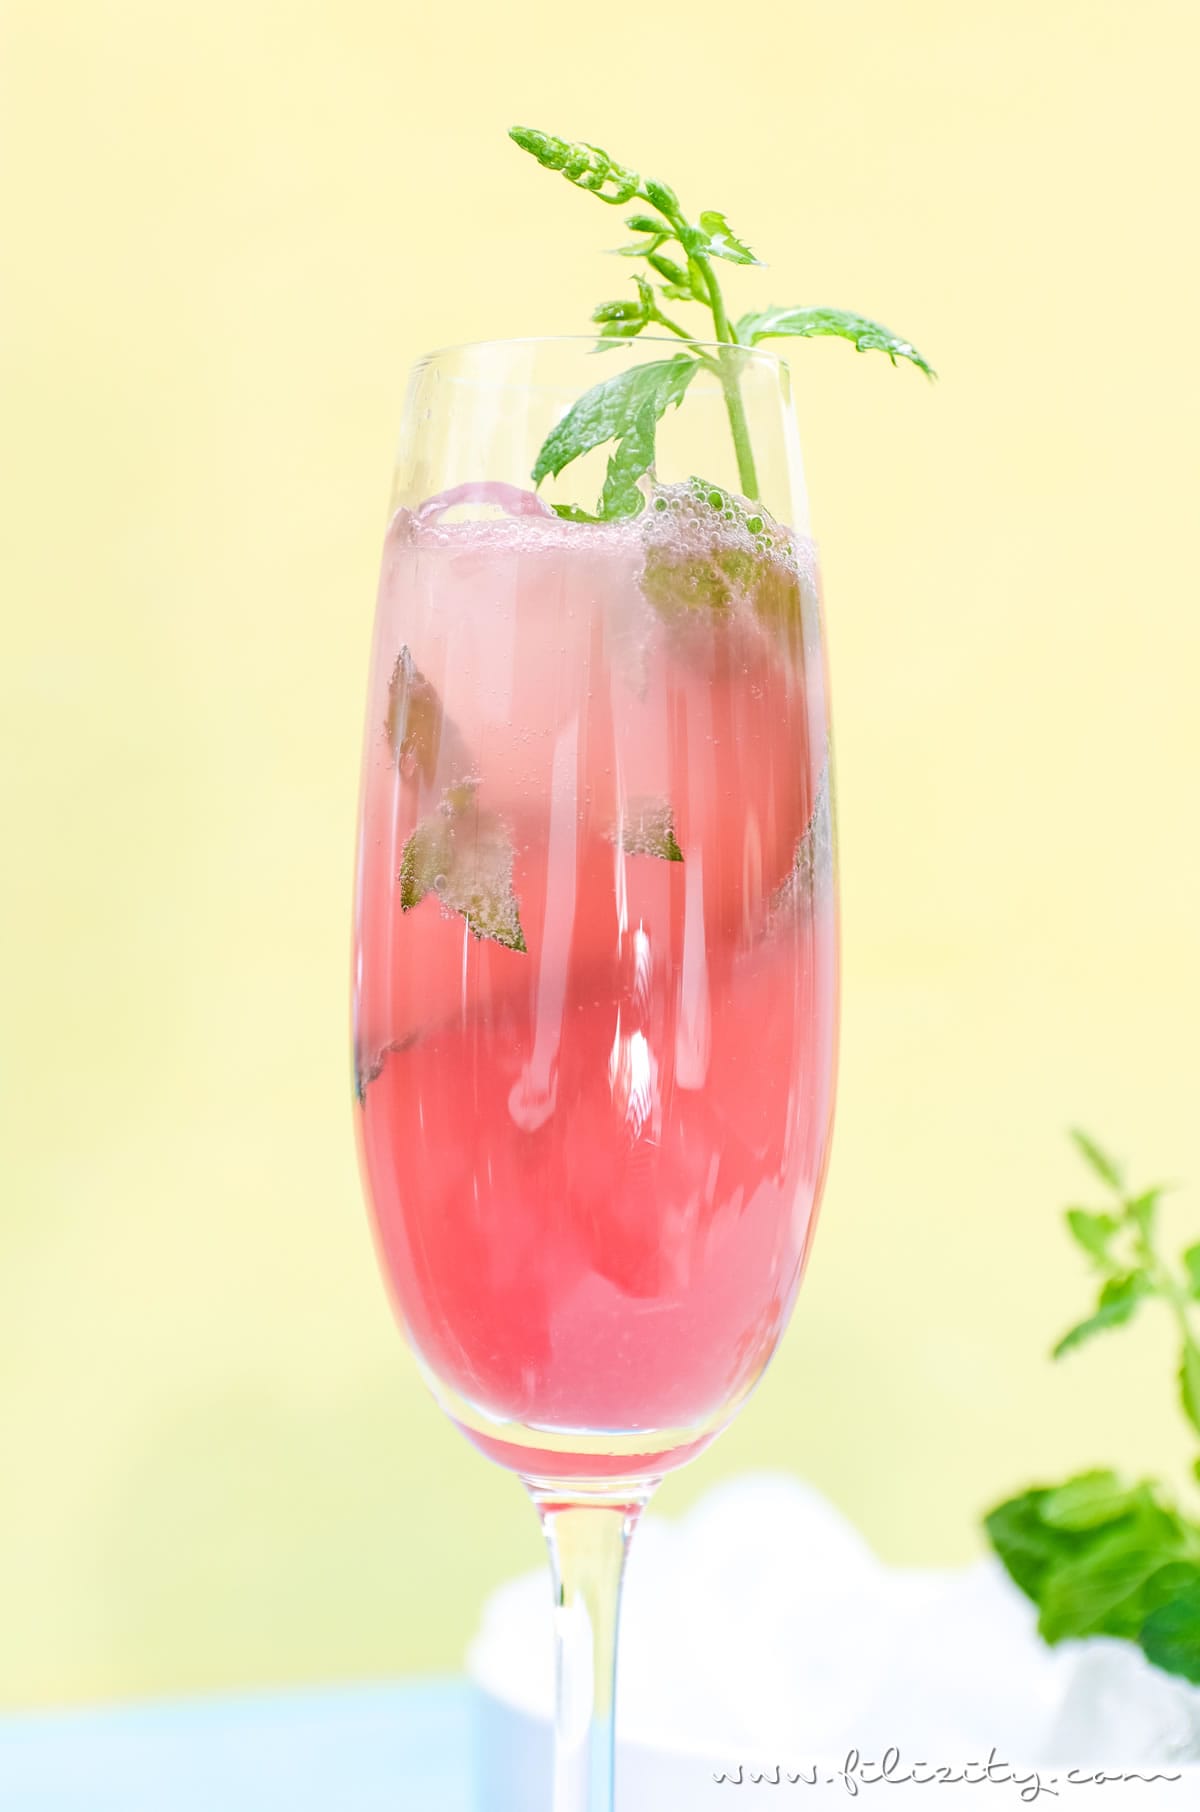 Rezept für einen Grapefruit-Cocktail mit oder ohne Alkohol | Erfrischender Sommer-Drink aus dem Slow Juicer | Filizity.com | Food-Blog aus dem Rheinland #cocktail #mocktail #sommer